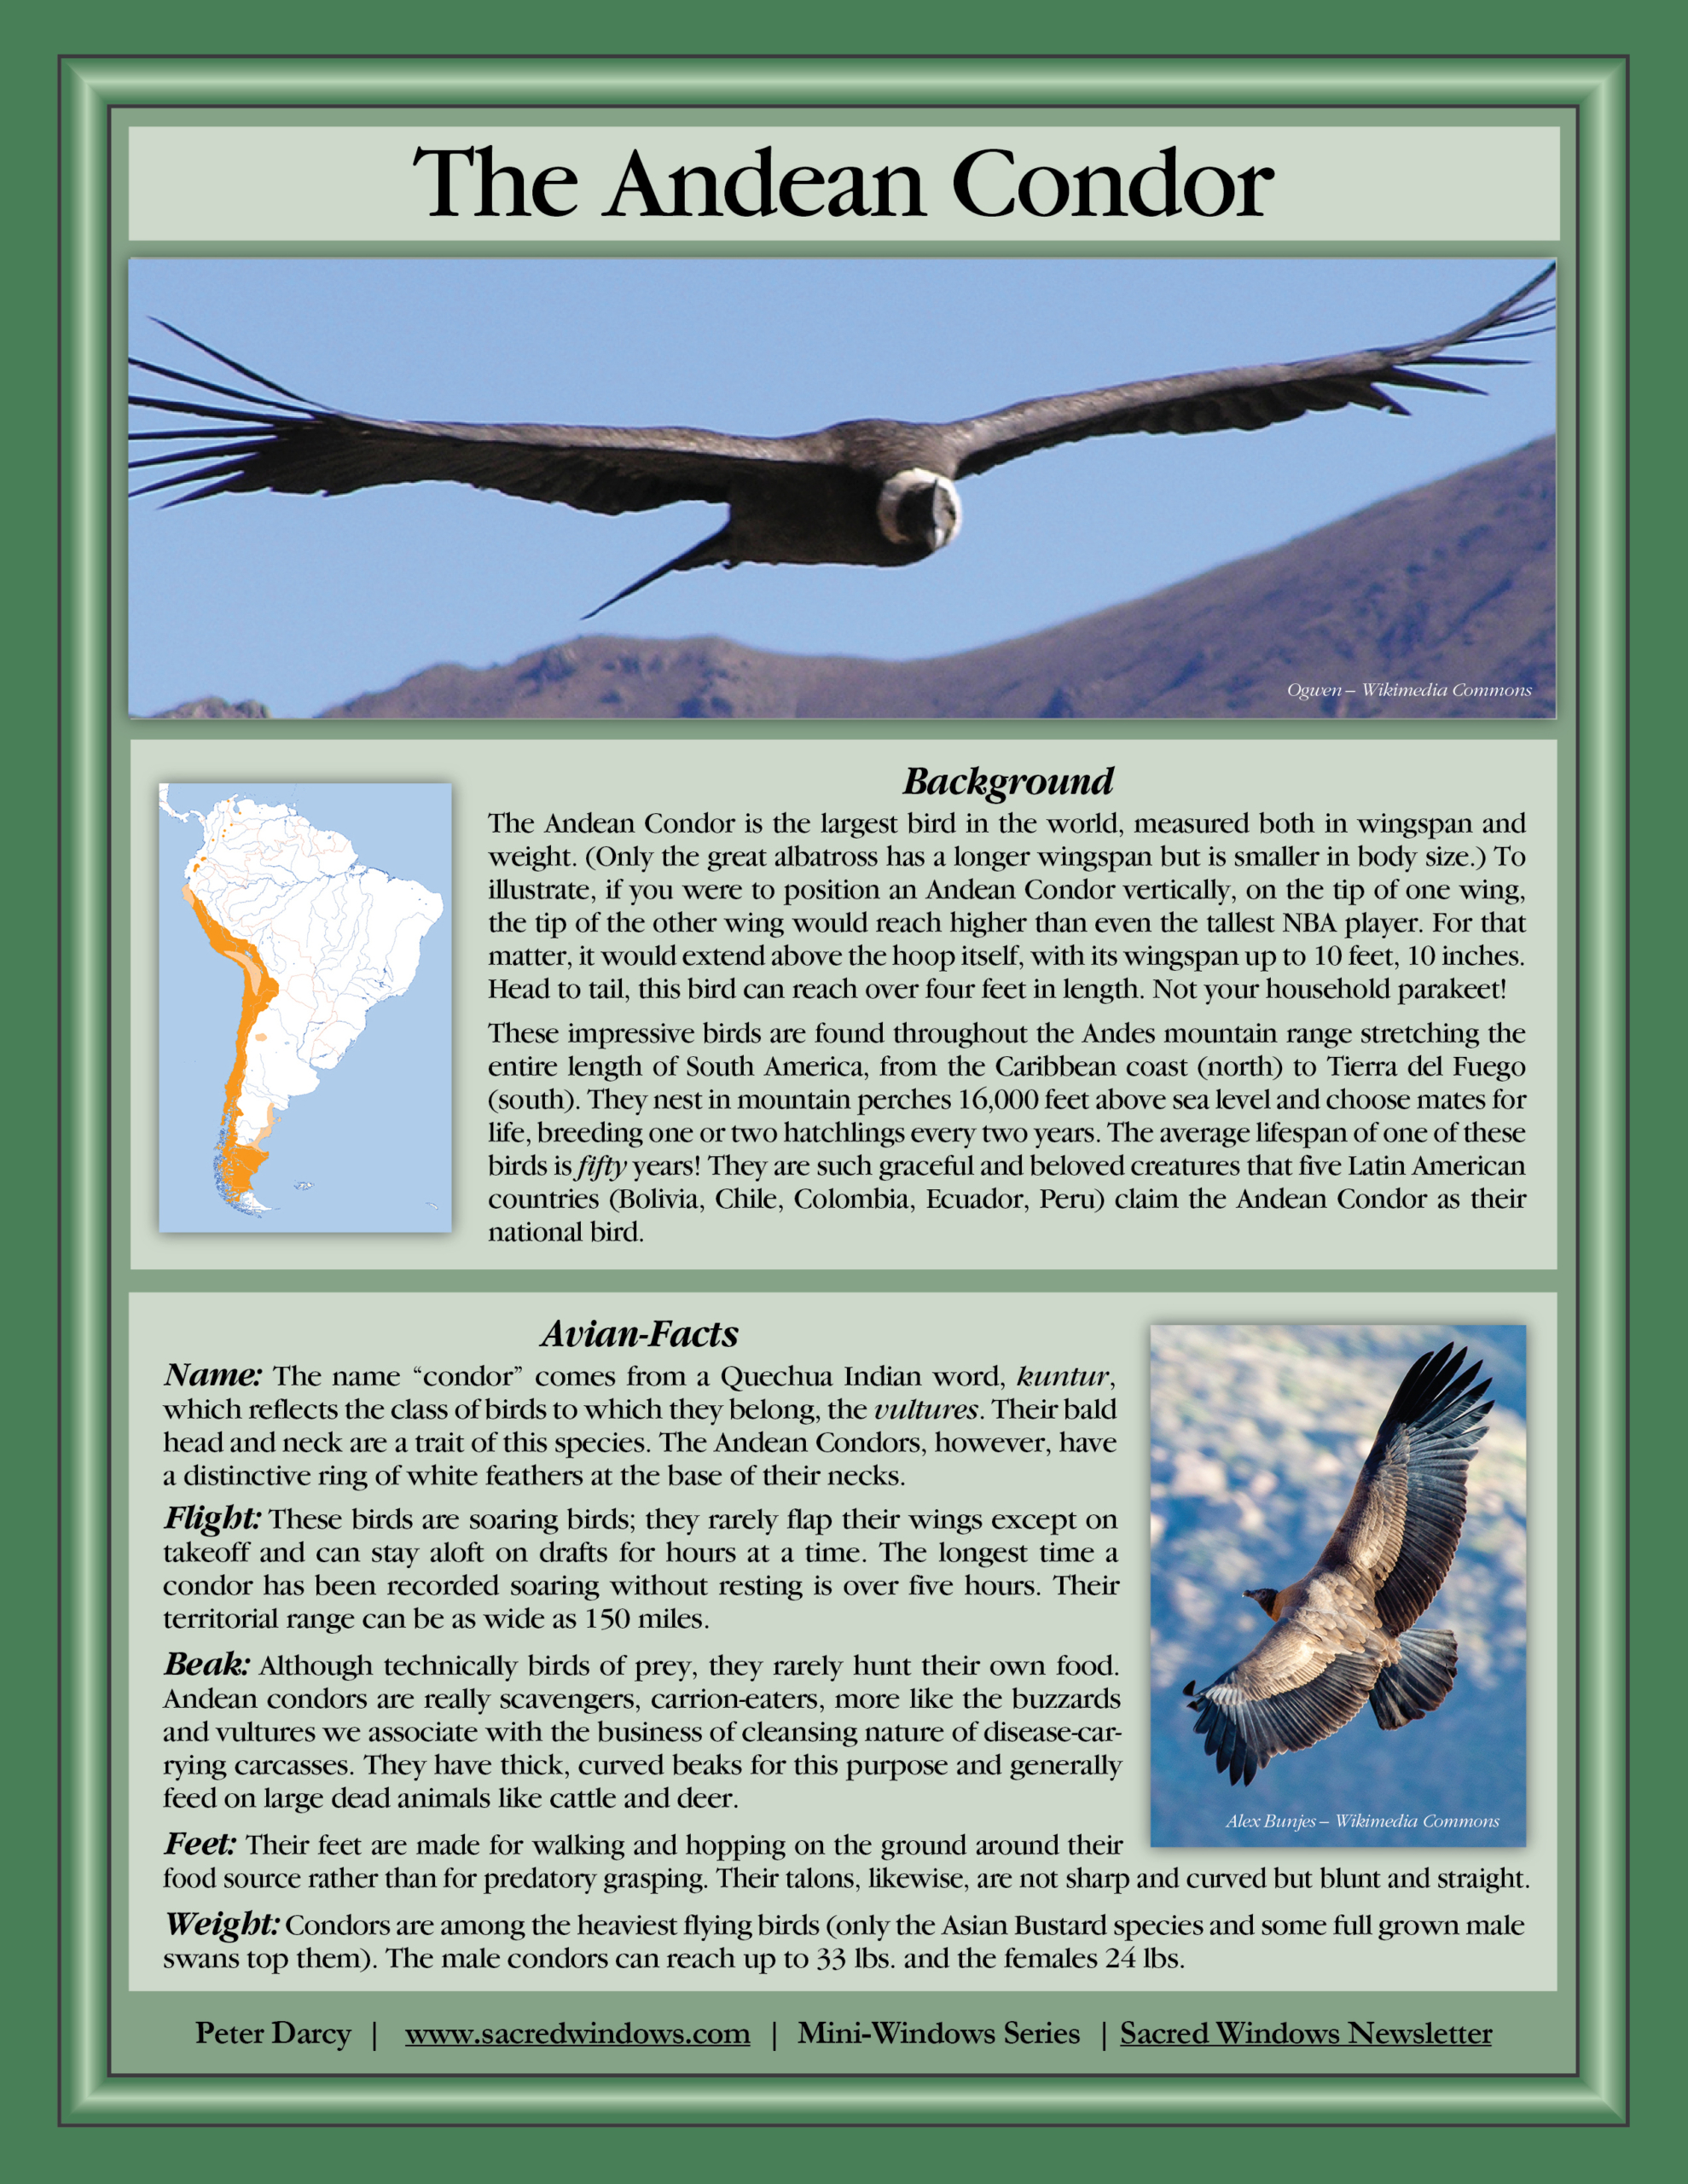 Andean Condor in flight